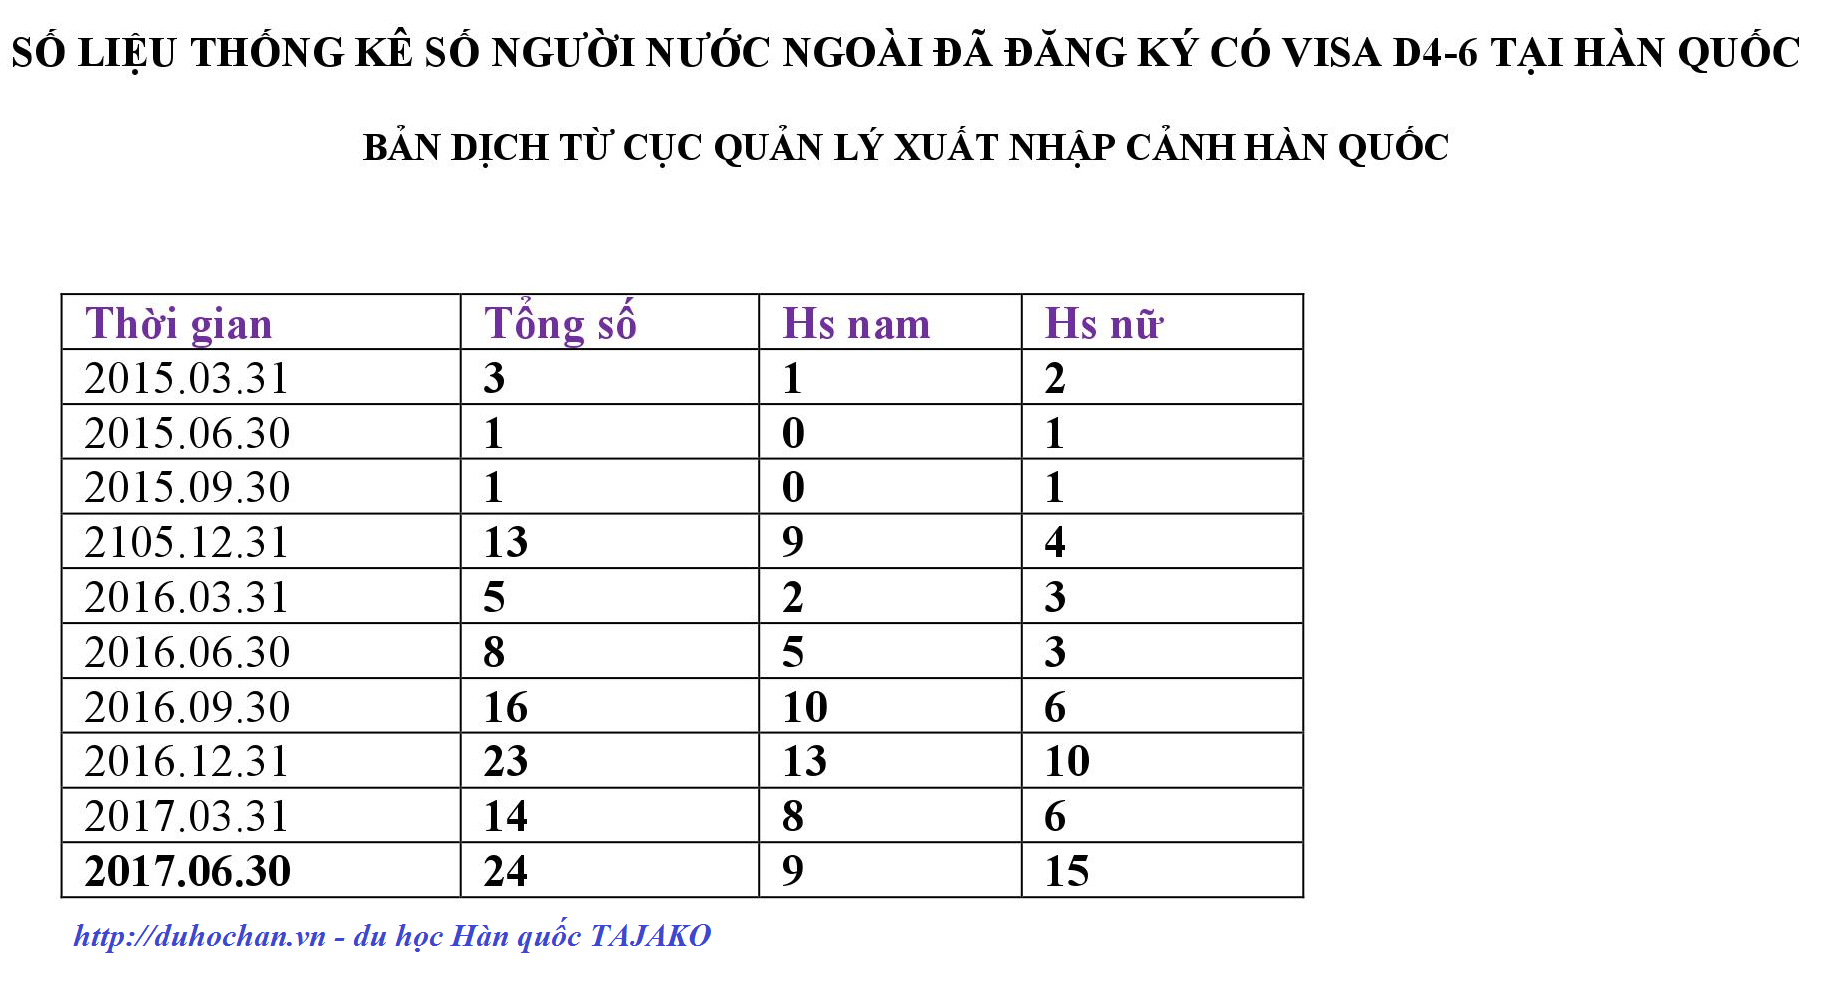 Số-liệu-thống-kê-Visa-D4-6-tại-Hàn-Quốc